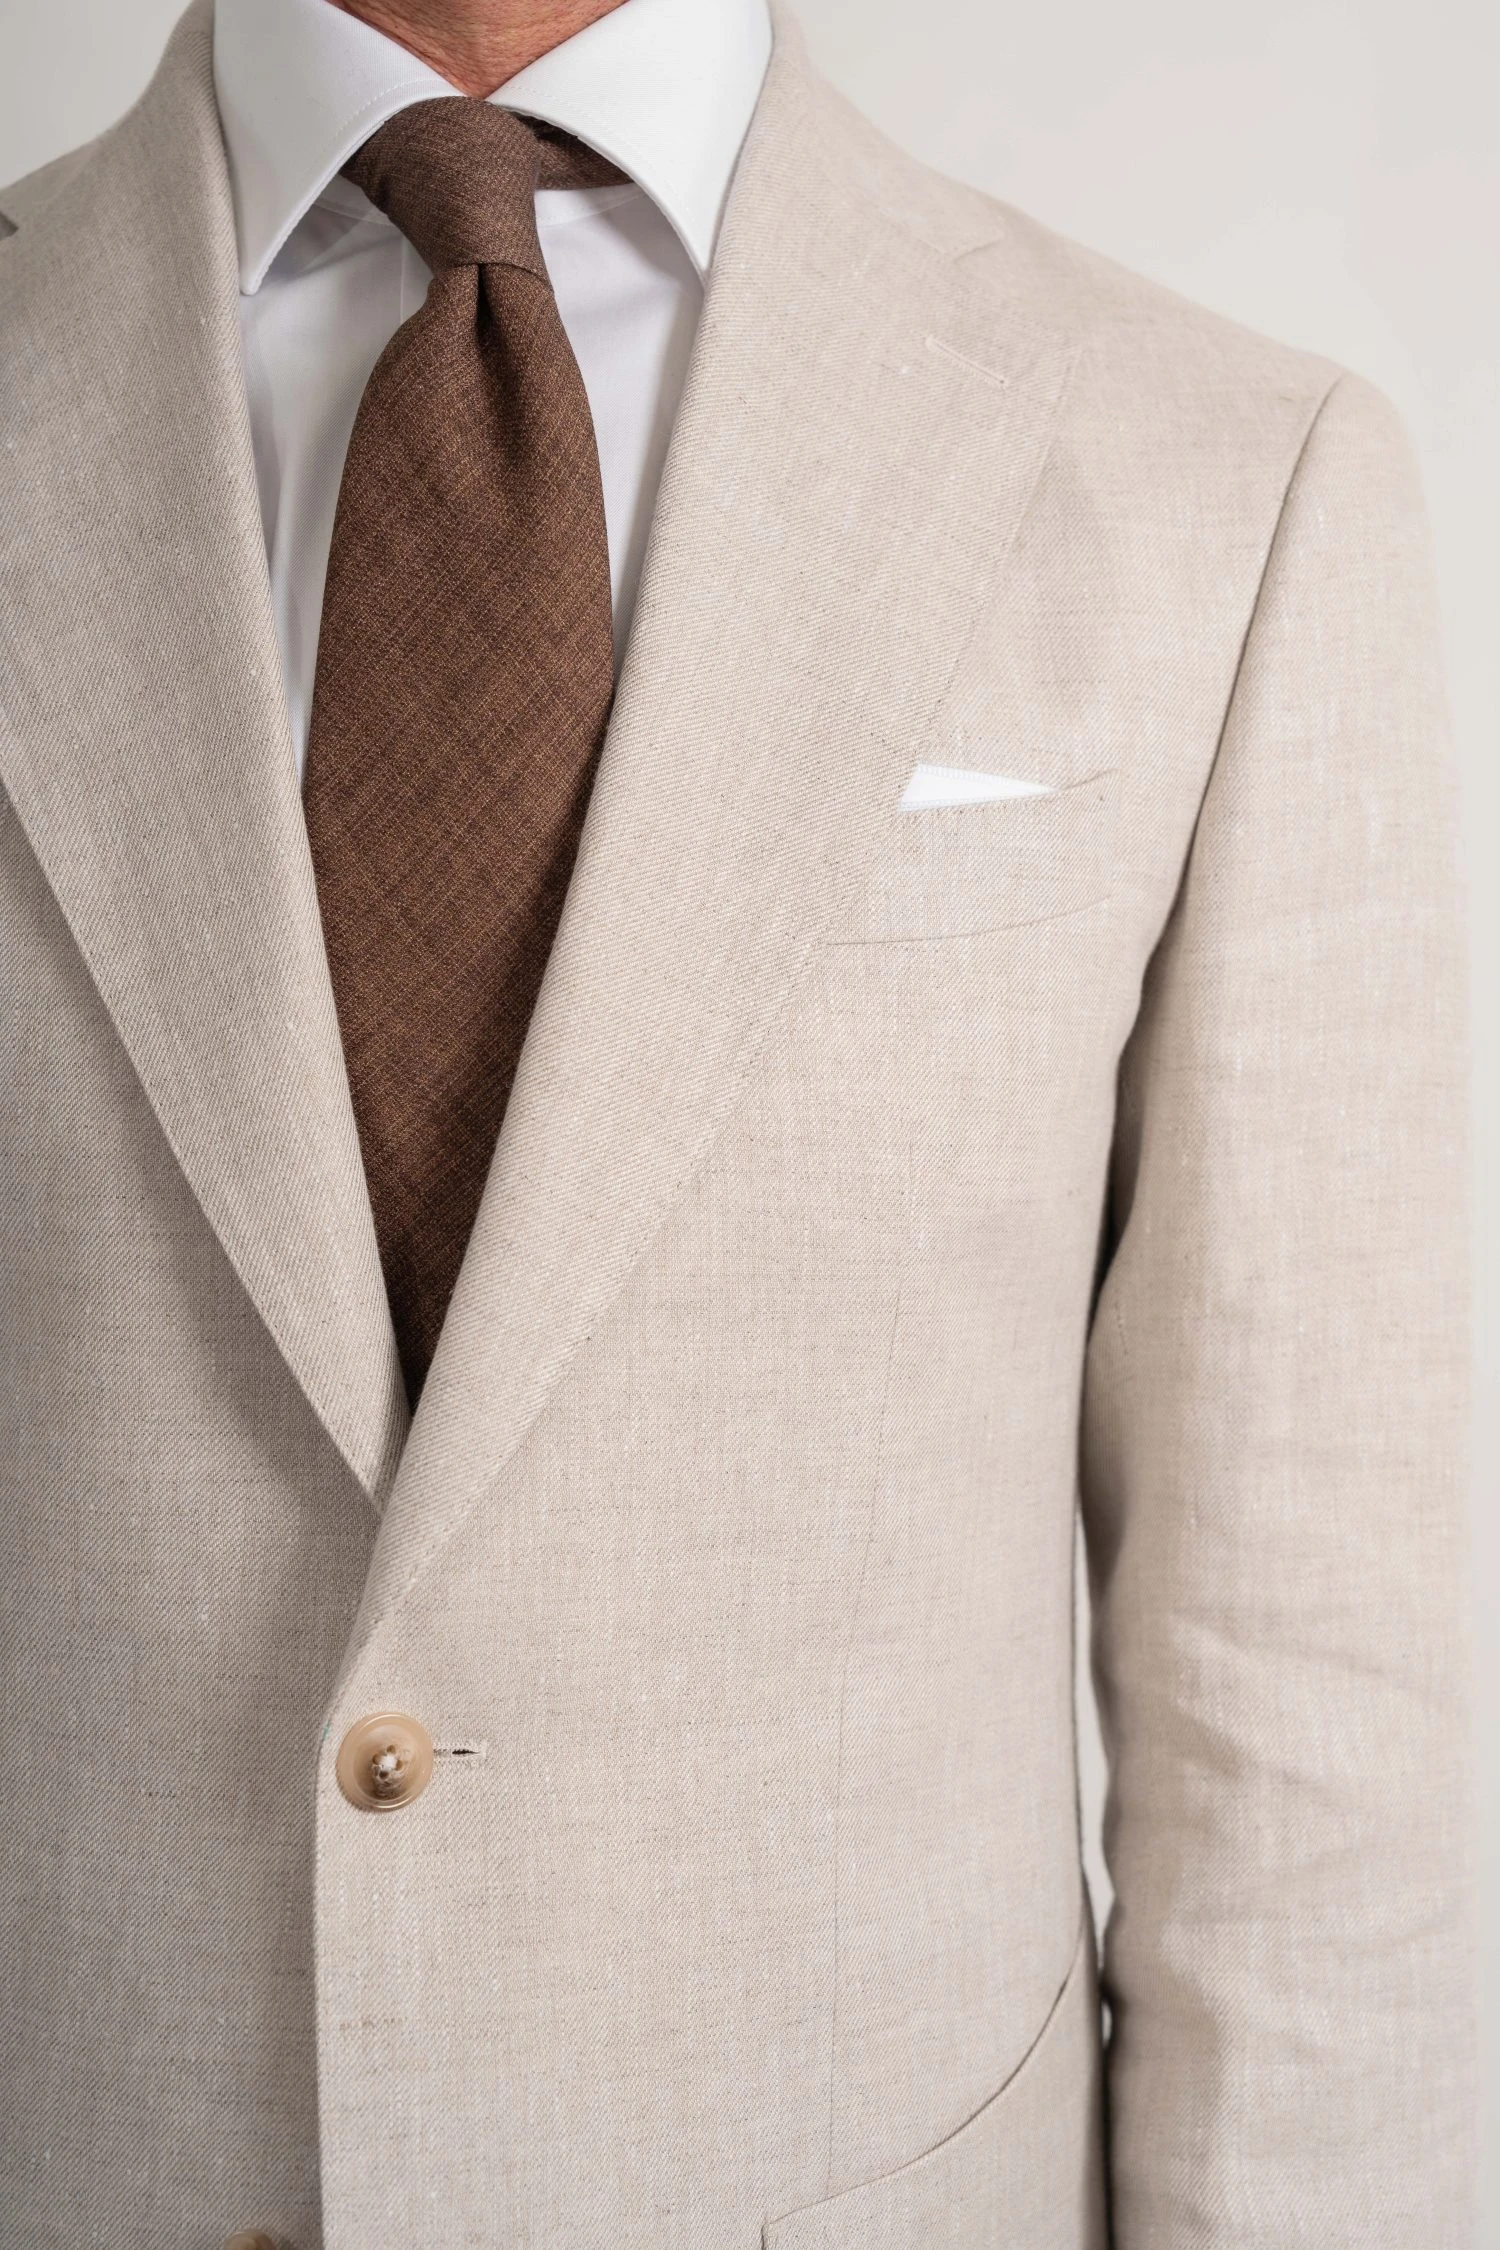 custom made irish linen suit in natural beige